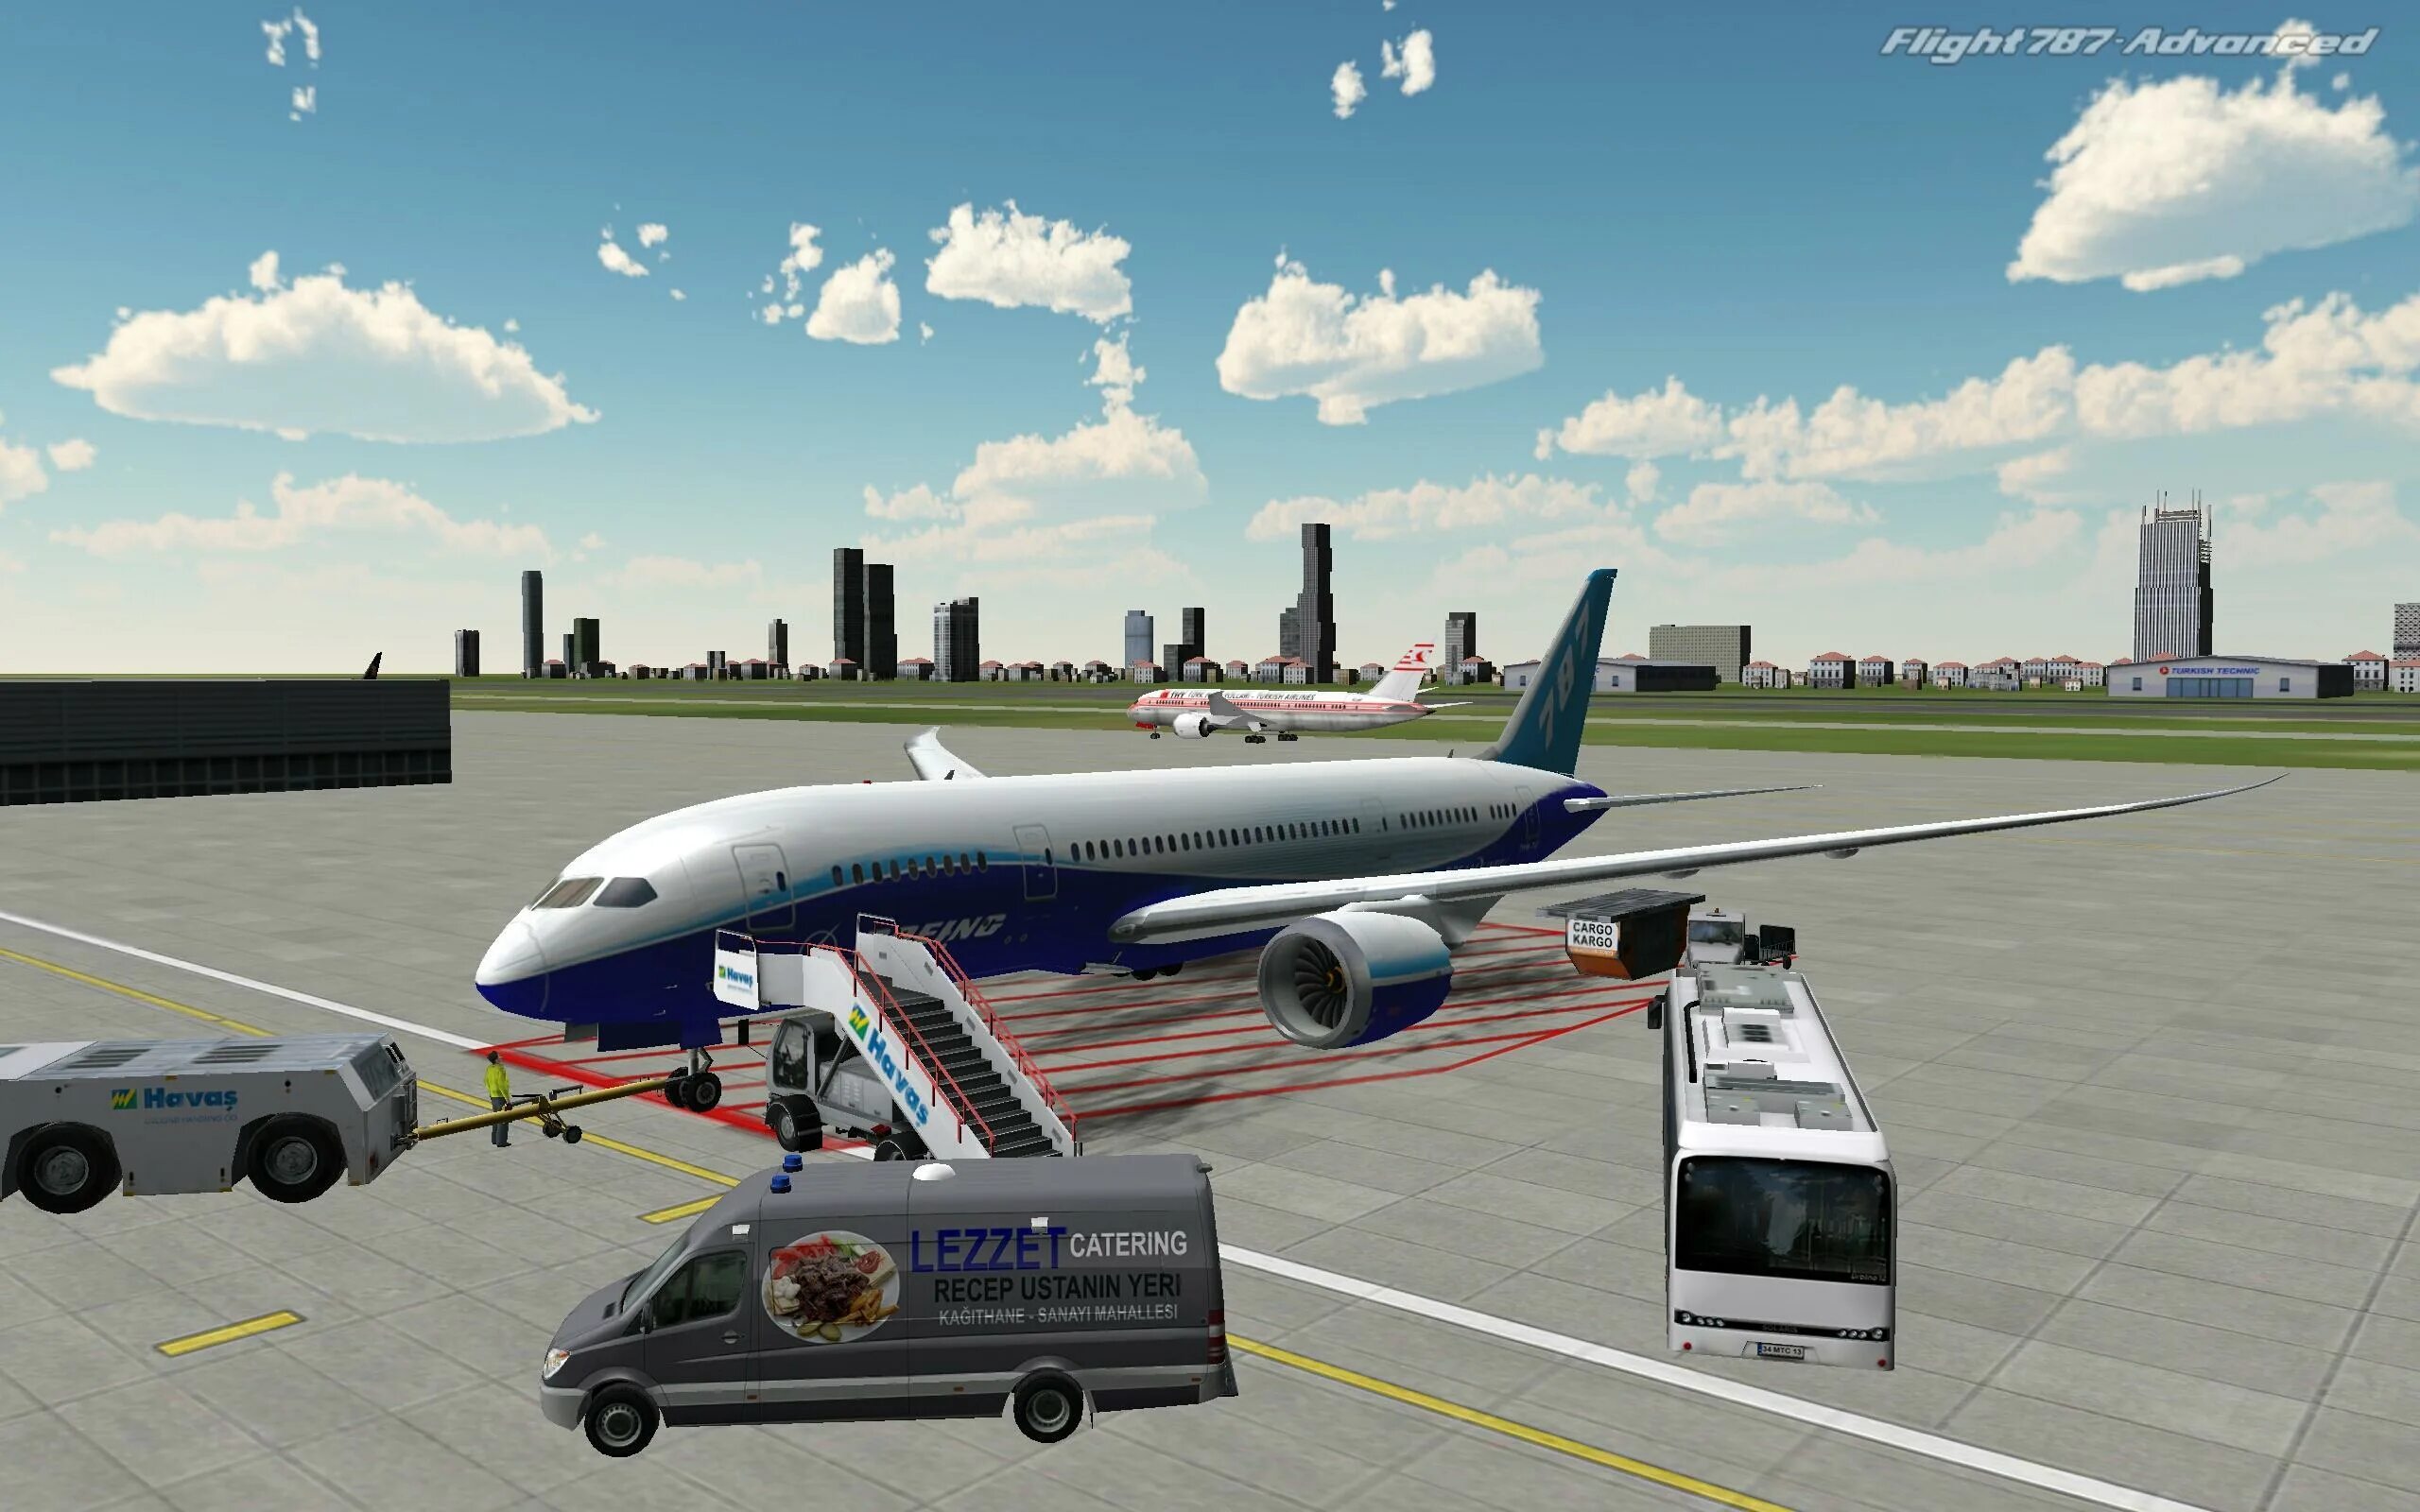 Flight 787 - Advanced. Реал Флайт симулятор. Авиасимулятор ВДНХ. Симулятор самолета пассажирского. Игры про самолеты симуляторы